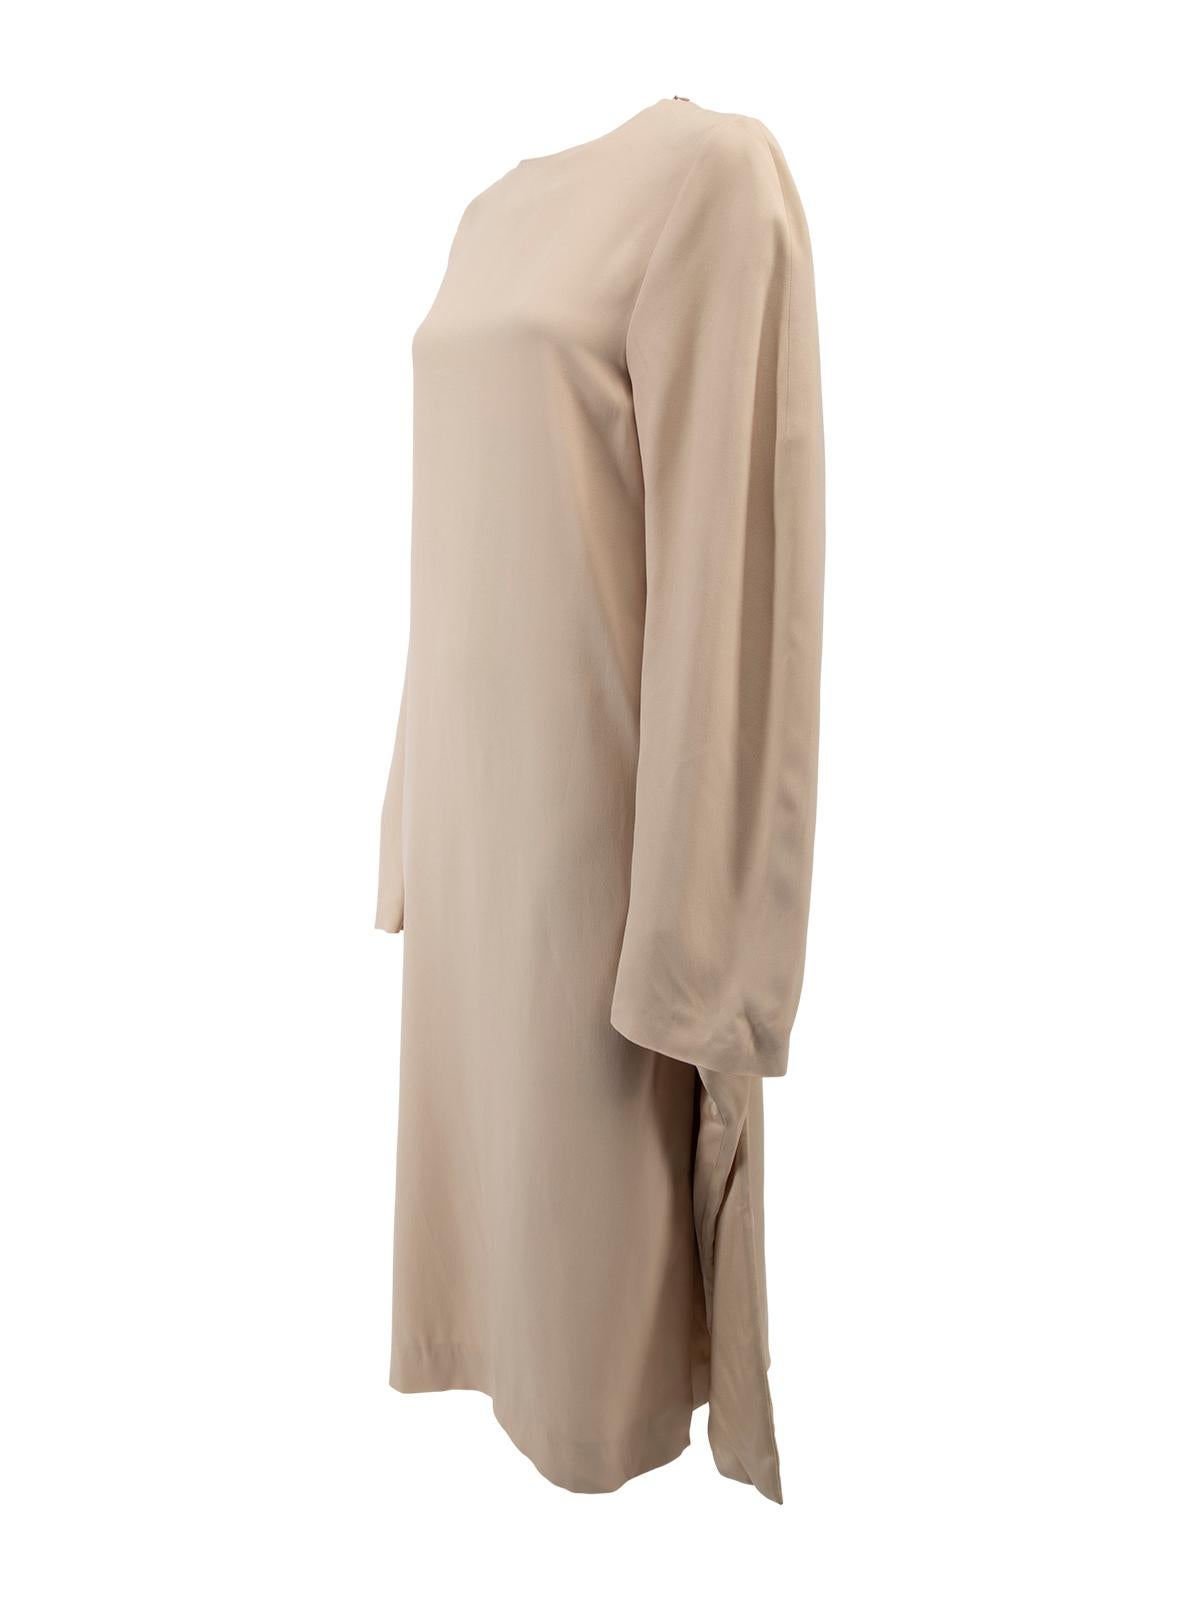 Jil Sander Women's Pastel Nude Long Sleeve Silk Dress In New Condition In London, GB